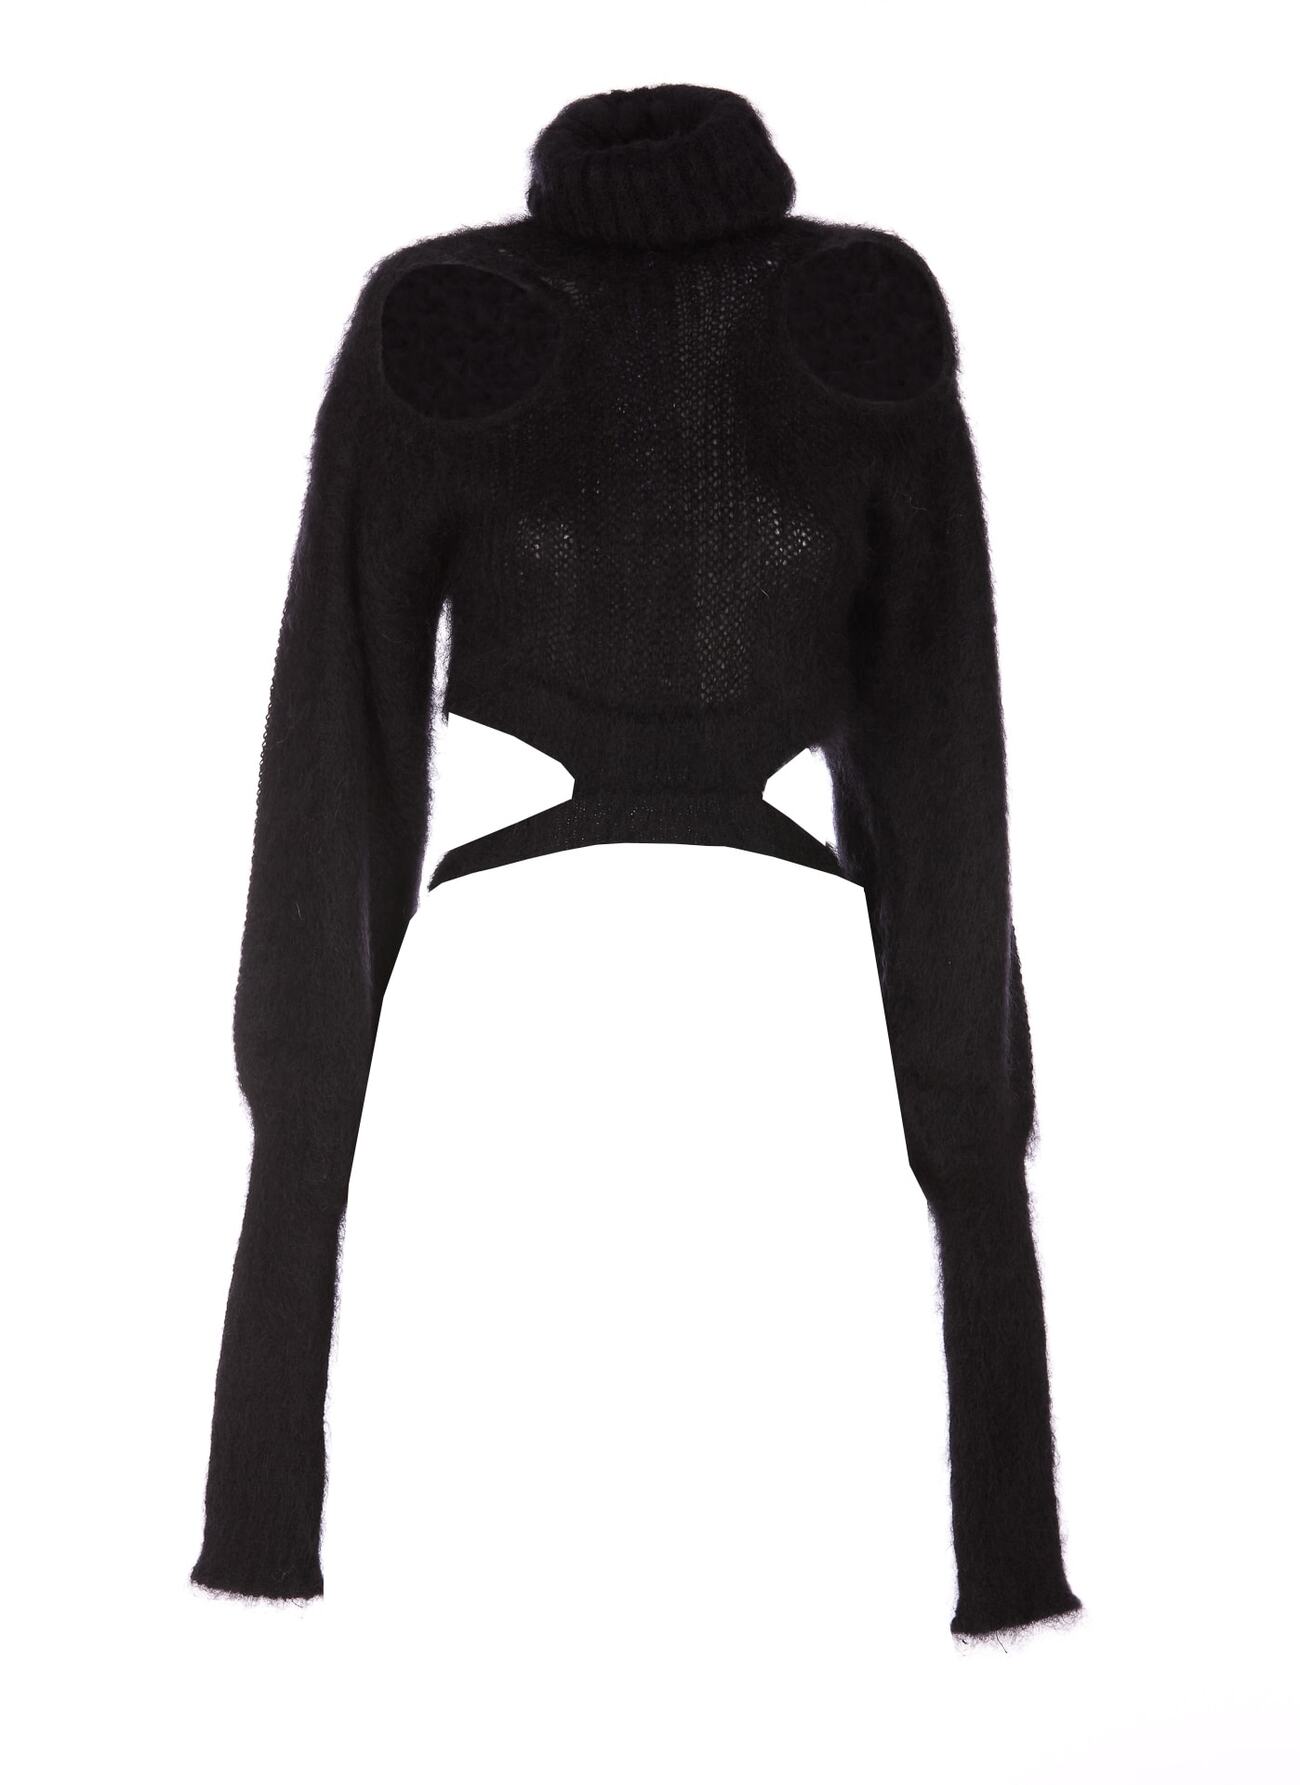 ANDREADAMO Sweater in black